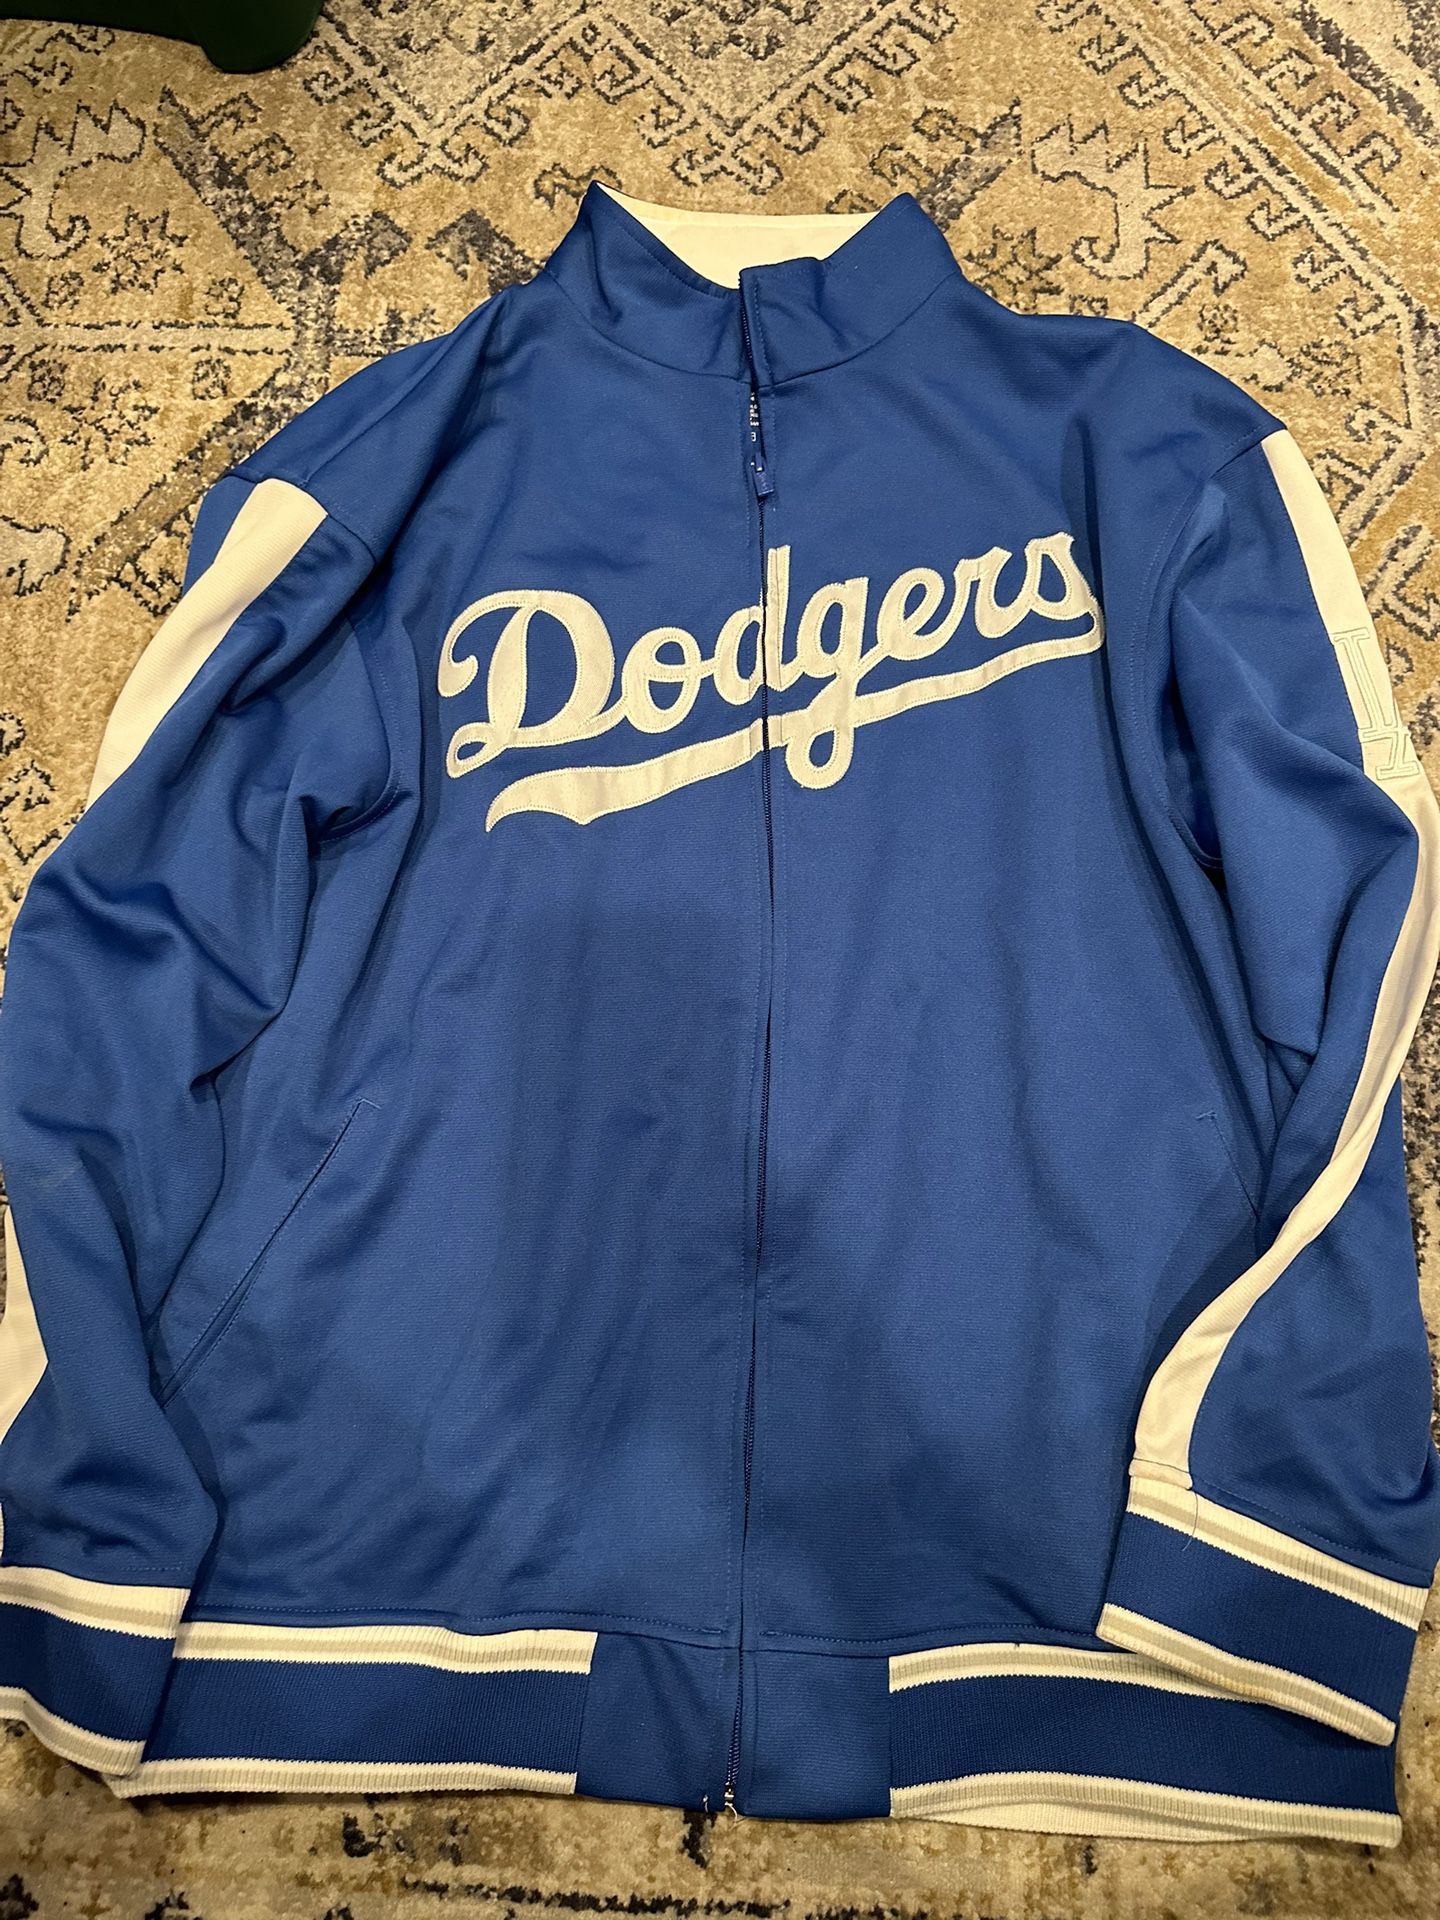 Dodgers No Hoodie Jacket Large Mens